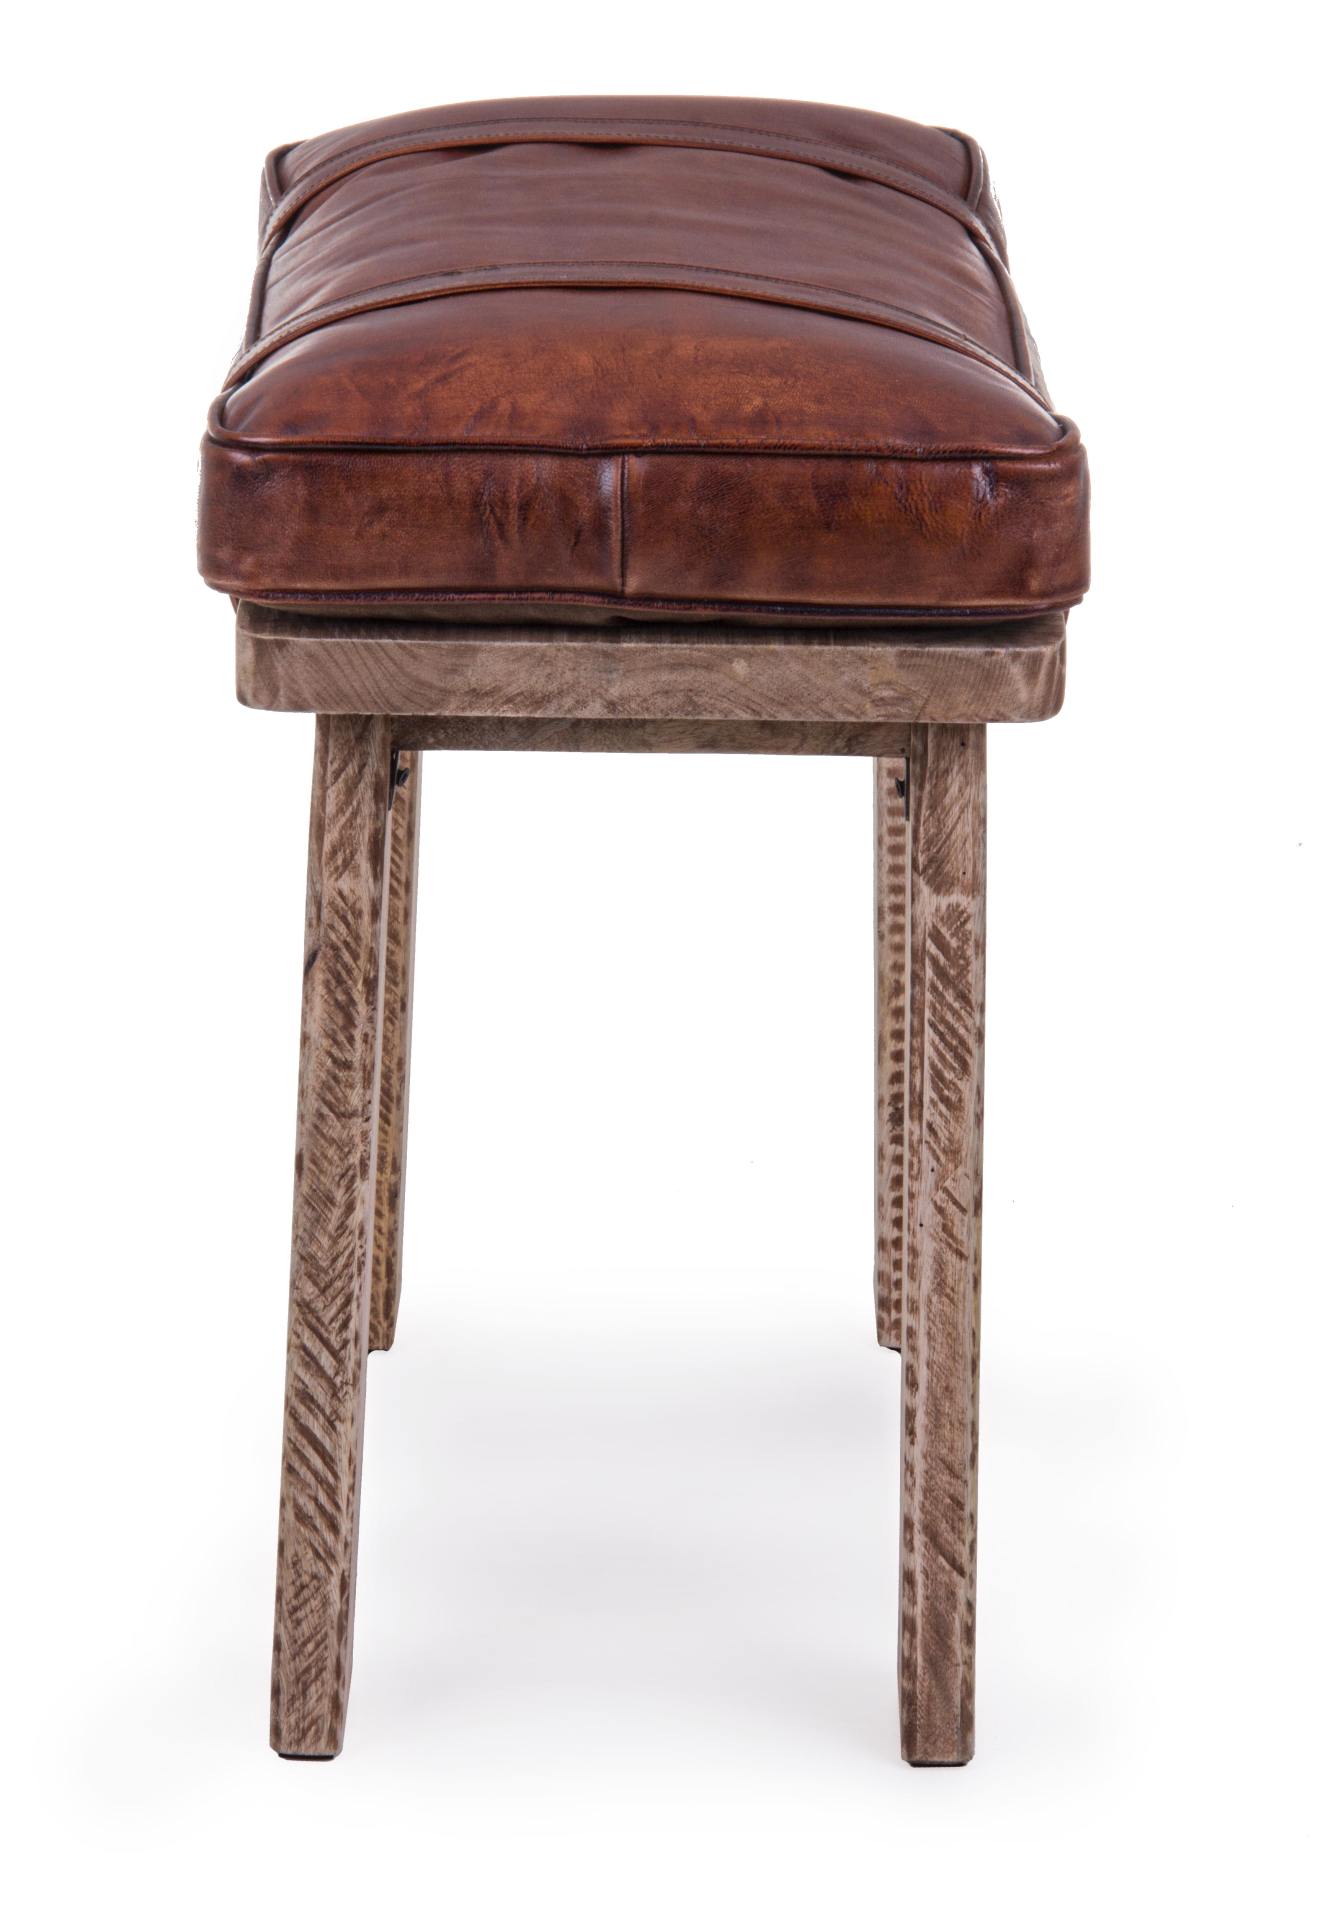 Der Hocker Charleston überzeugt mit seinem klassischen Design. Gefertigt wurde er aus Büffelleder, welches einen braunen Farbton besitzt. Das Gestell ist aus Mangoholz und hat eine natürliche Farbe. Die Höhe des Hockers beträgt 53 cm.